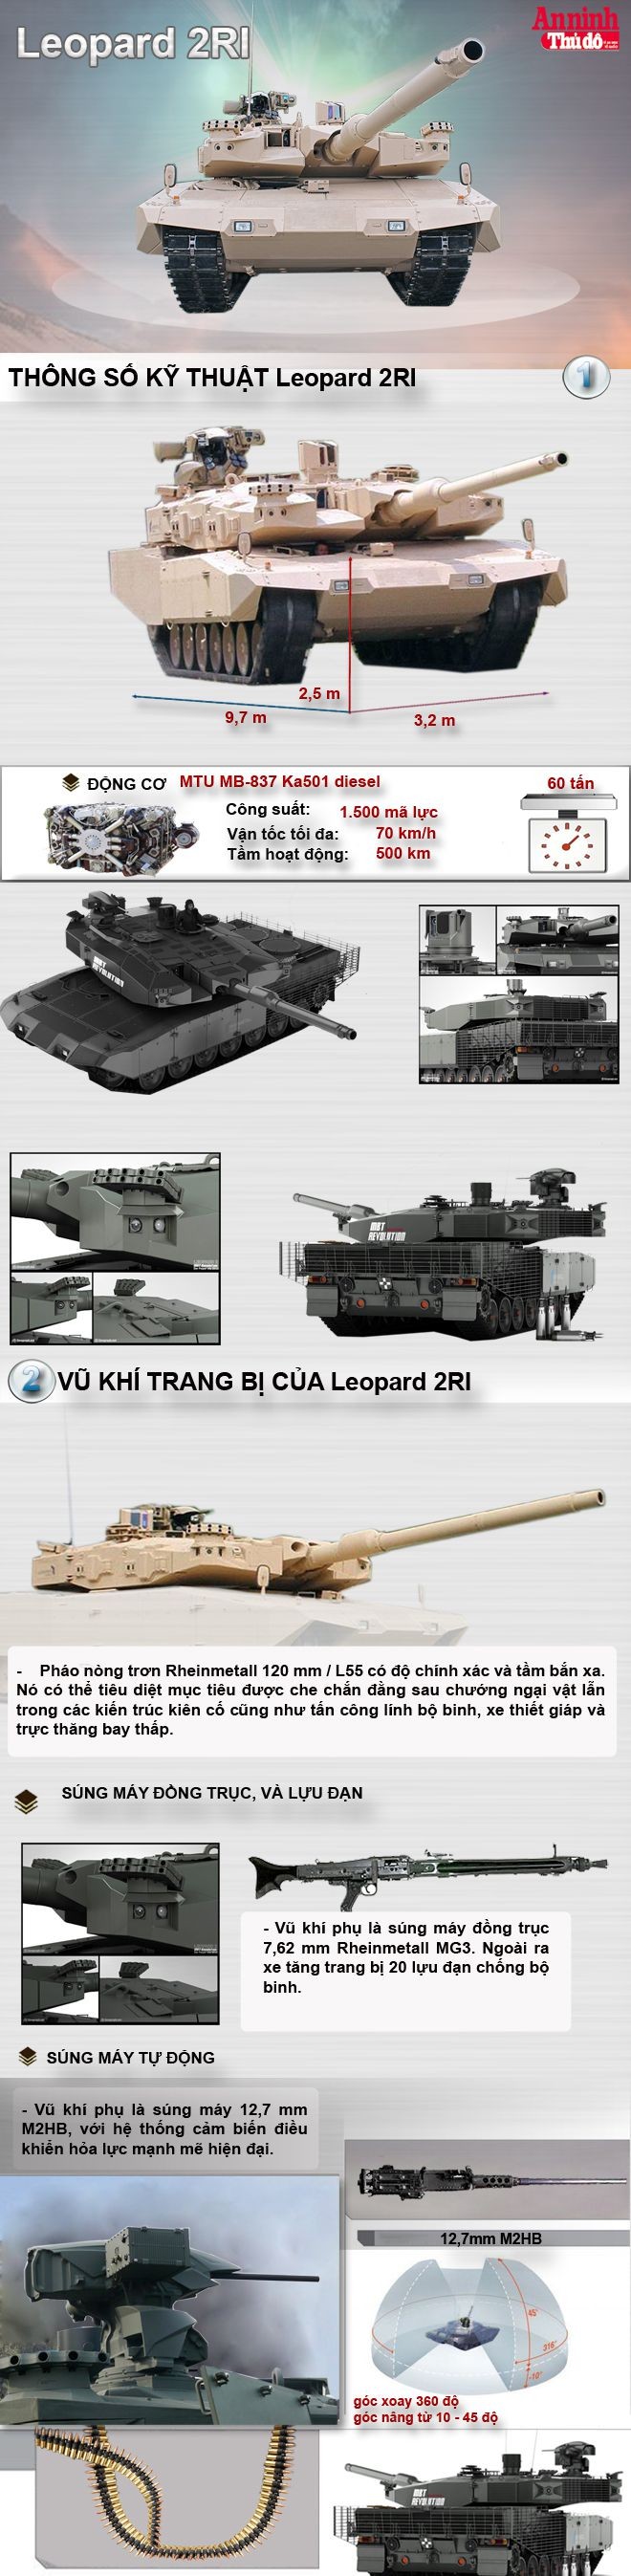 [Infographic] Leopard 2RI - Siêu tăng mạnh nhất Đông Nam Á